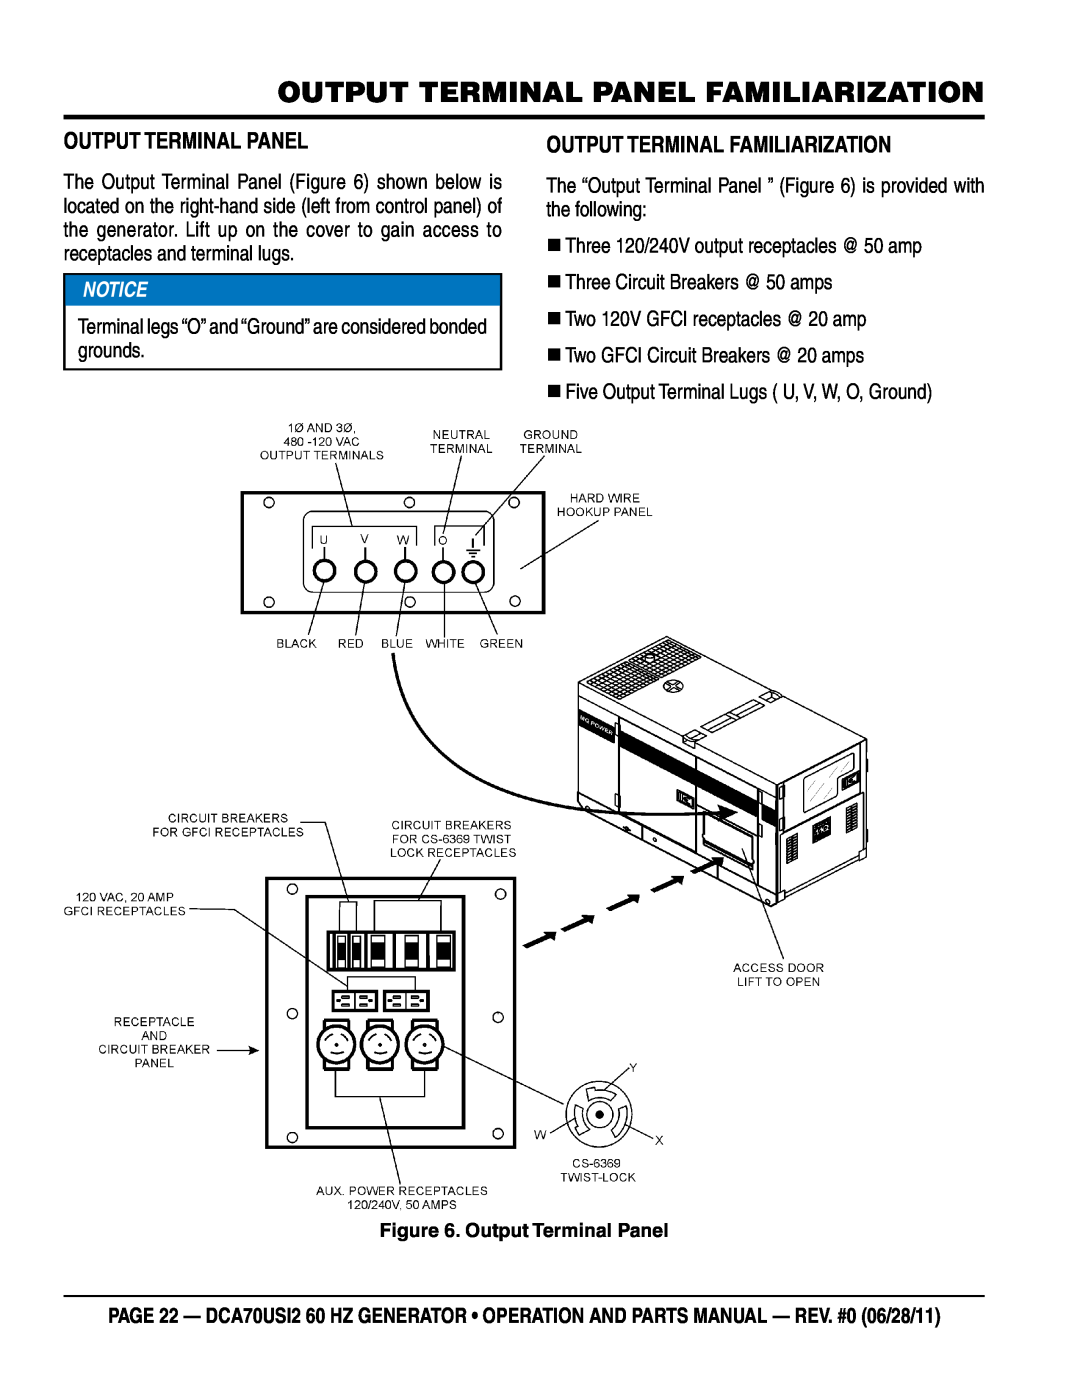 Multiquip DCA70USI2 manual Output Terminal Panel Familiarization, Output Terminal Familiarization 